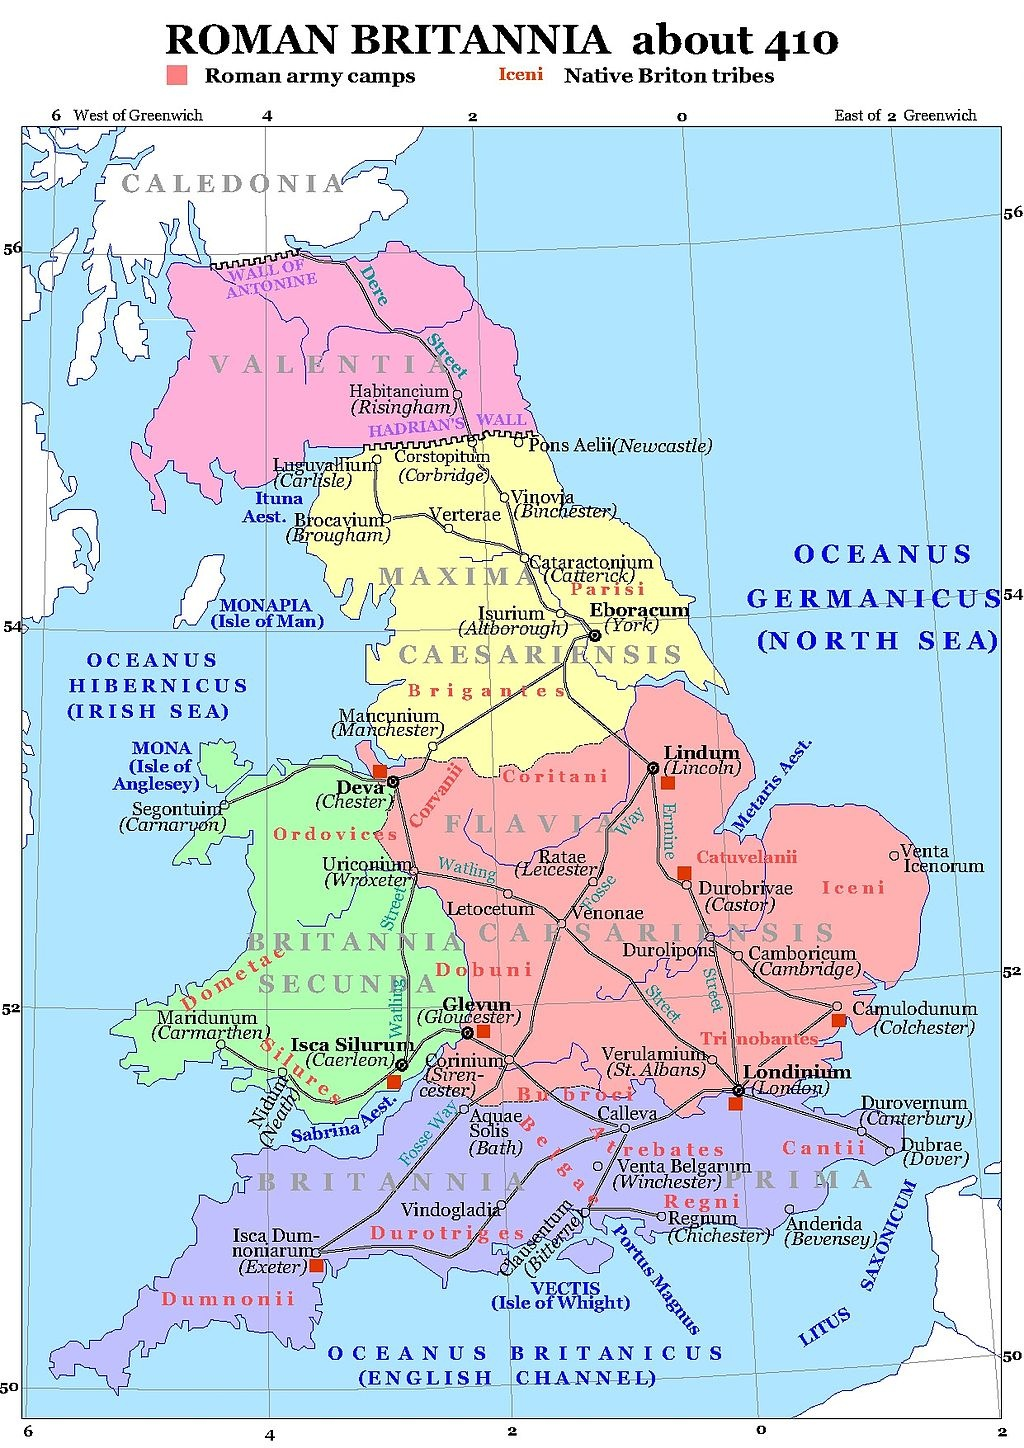 地理位置类位于英吉利海峡的英属王冠领地泽西岛(island of jersey)